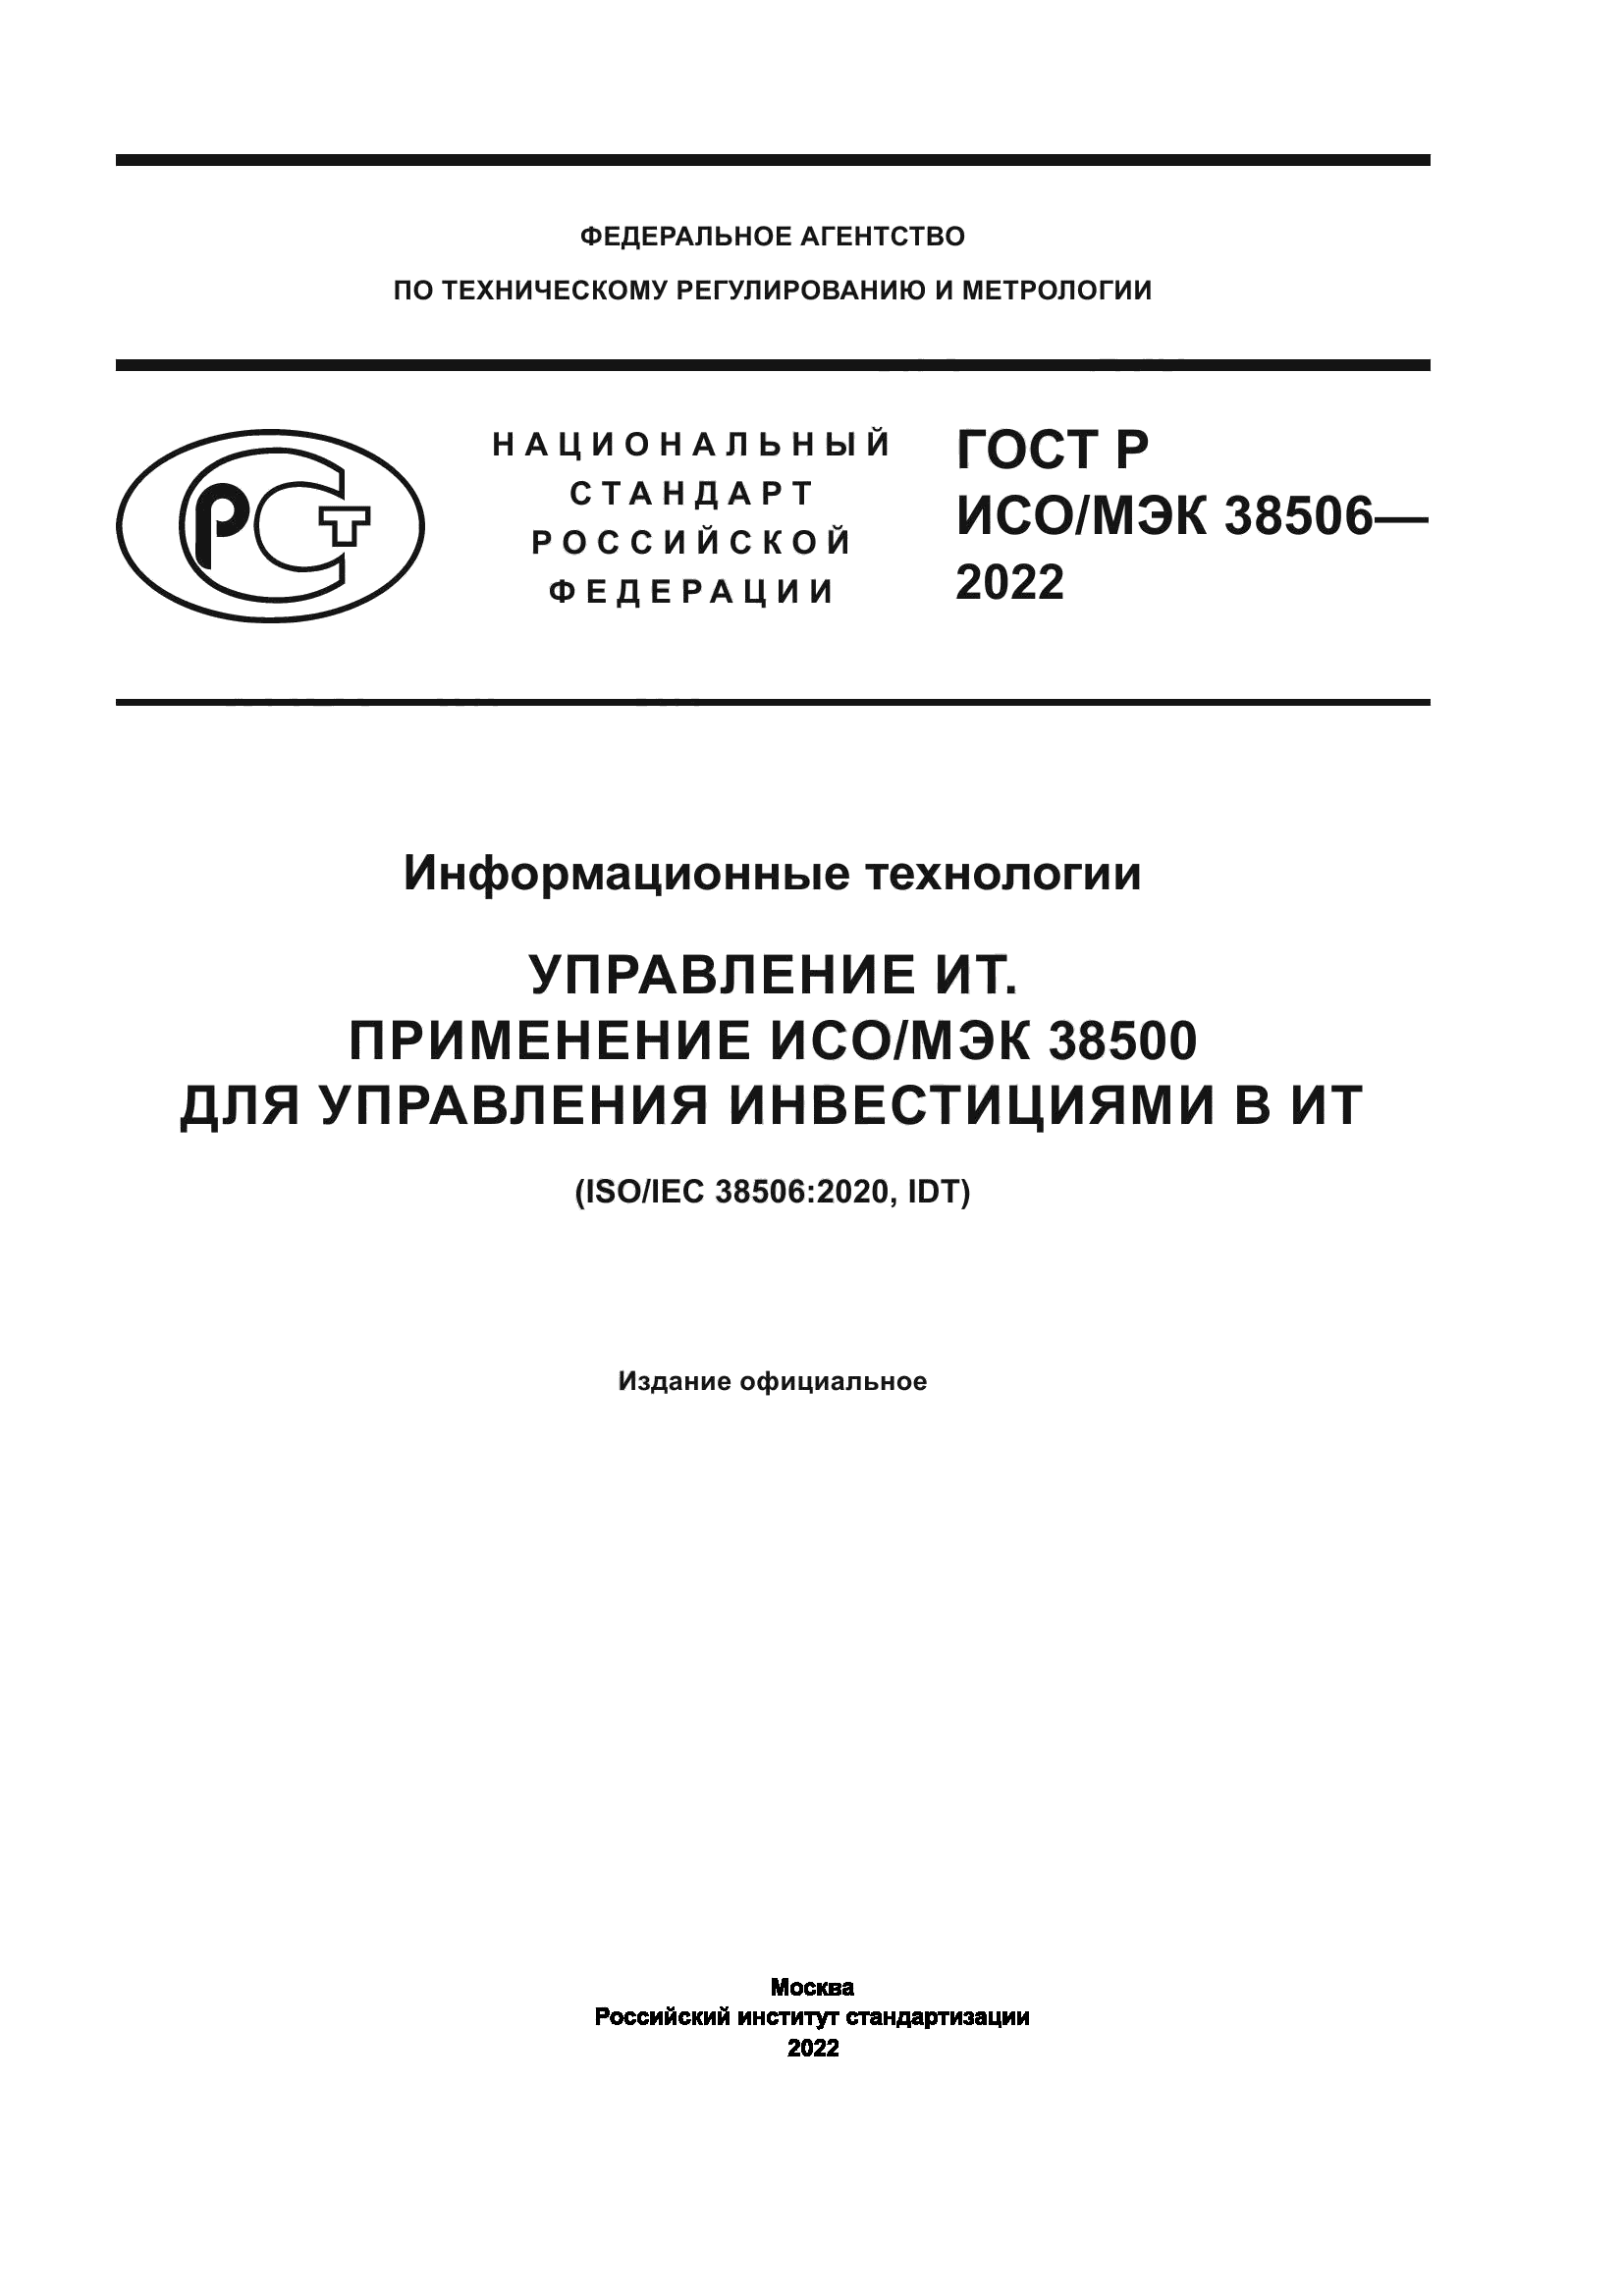 ГОСТ Р ИСО/МЭК 38506-2022